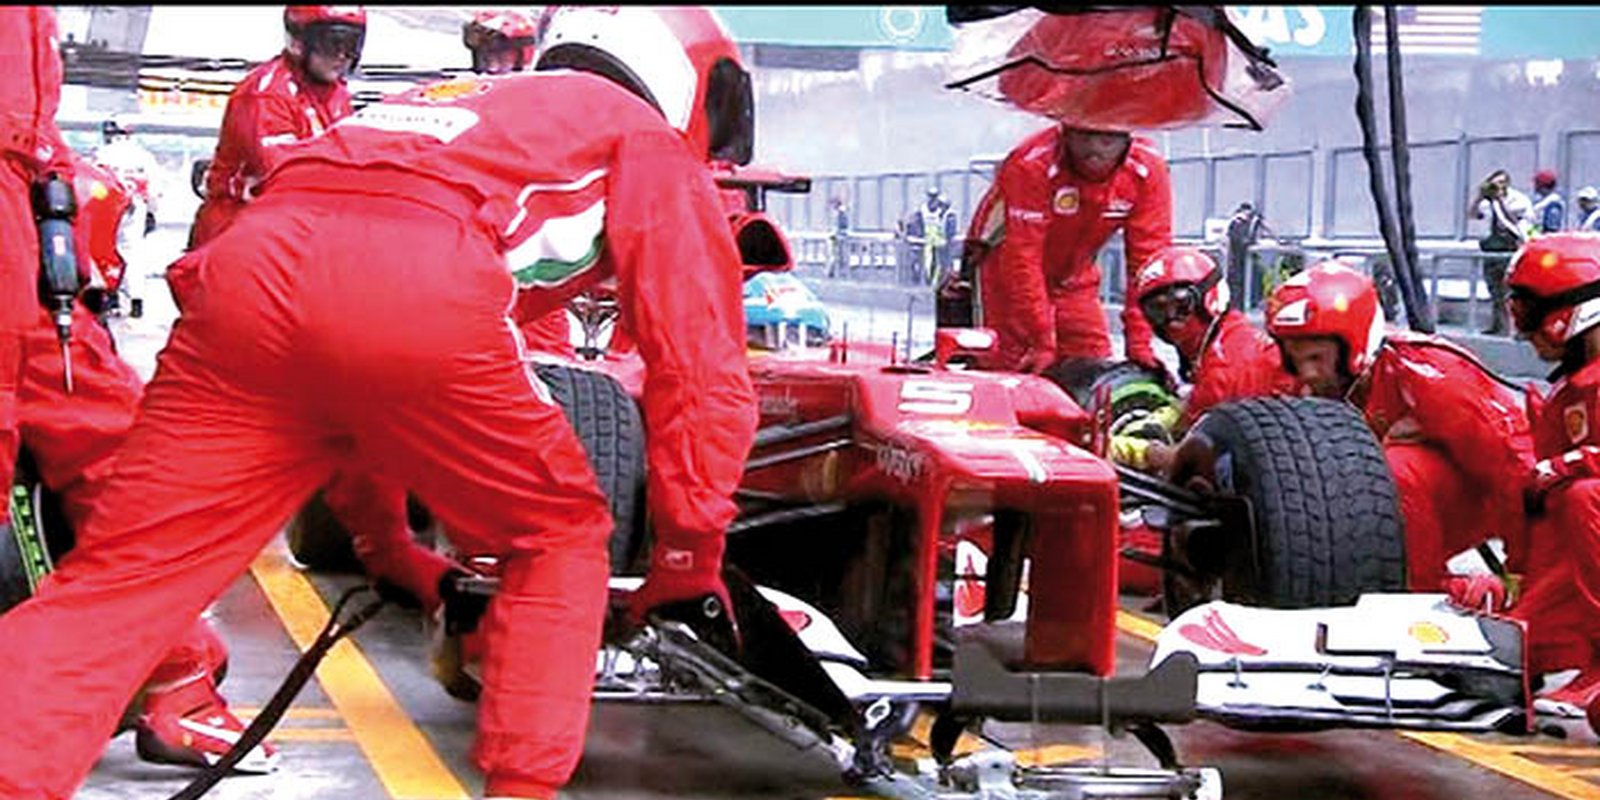 Der offizielle Rückblick der Formel 1 Saison 2012